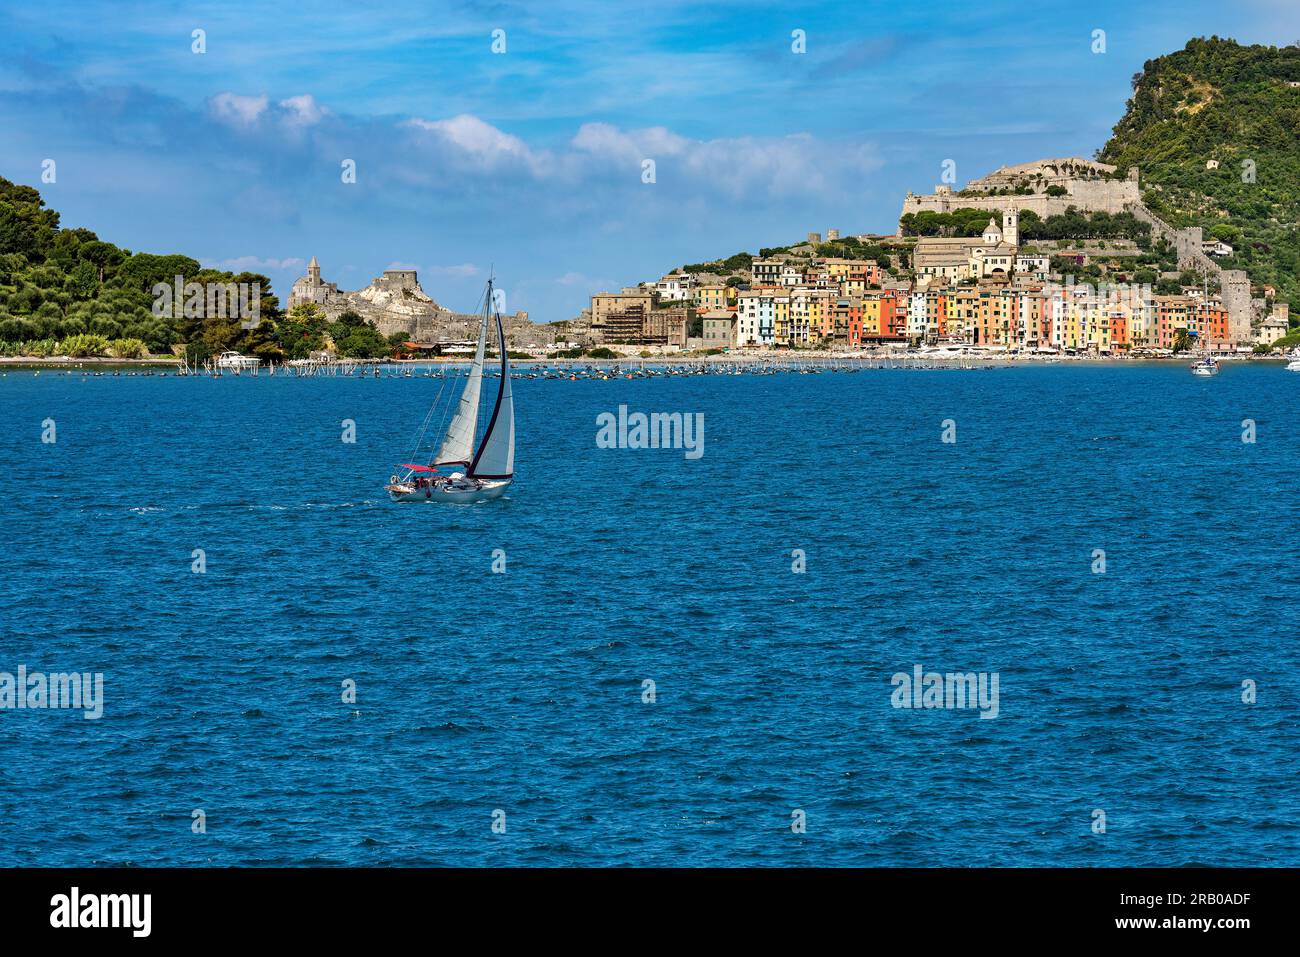 Barca a vela in movimento di fronte a Porto Venere o Portovenere (sito patrimonio dell'umanità dell'UNESCO), Golfo di la Spezia, Liguria, Italia, Europa meridionale. Foto Stock